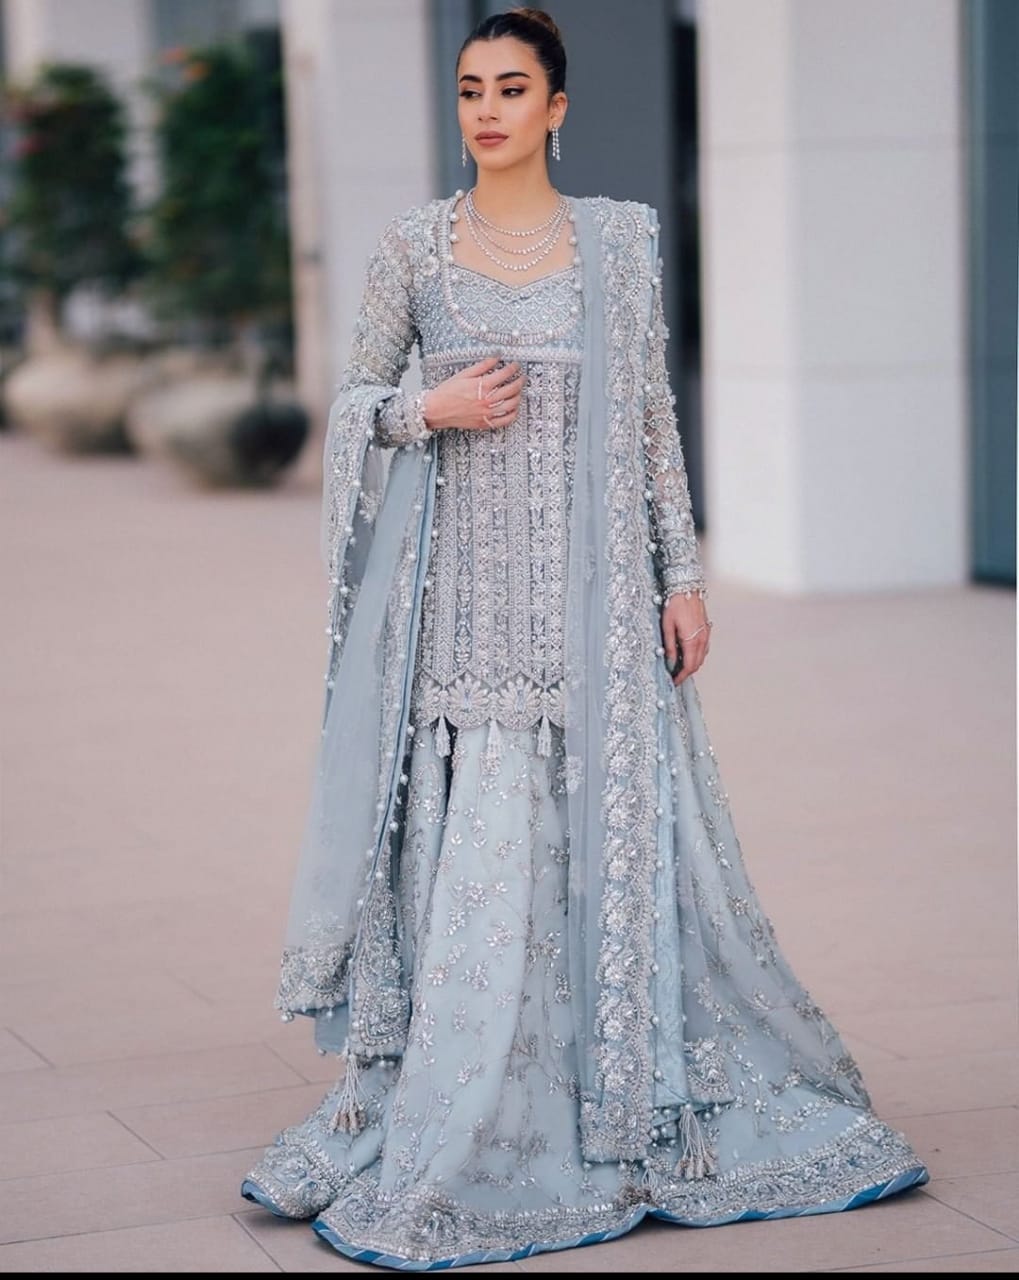 20+ Gorgeous Nikah Dress Colors Trending In 2021 | WedMePlz